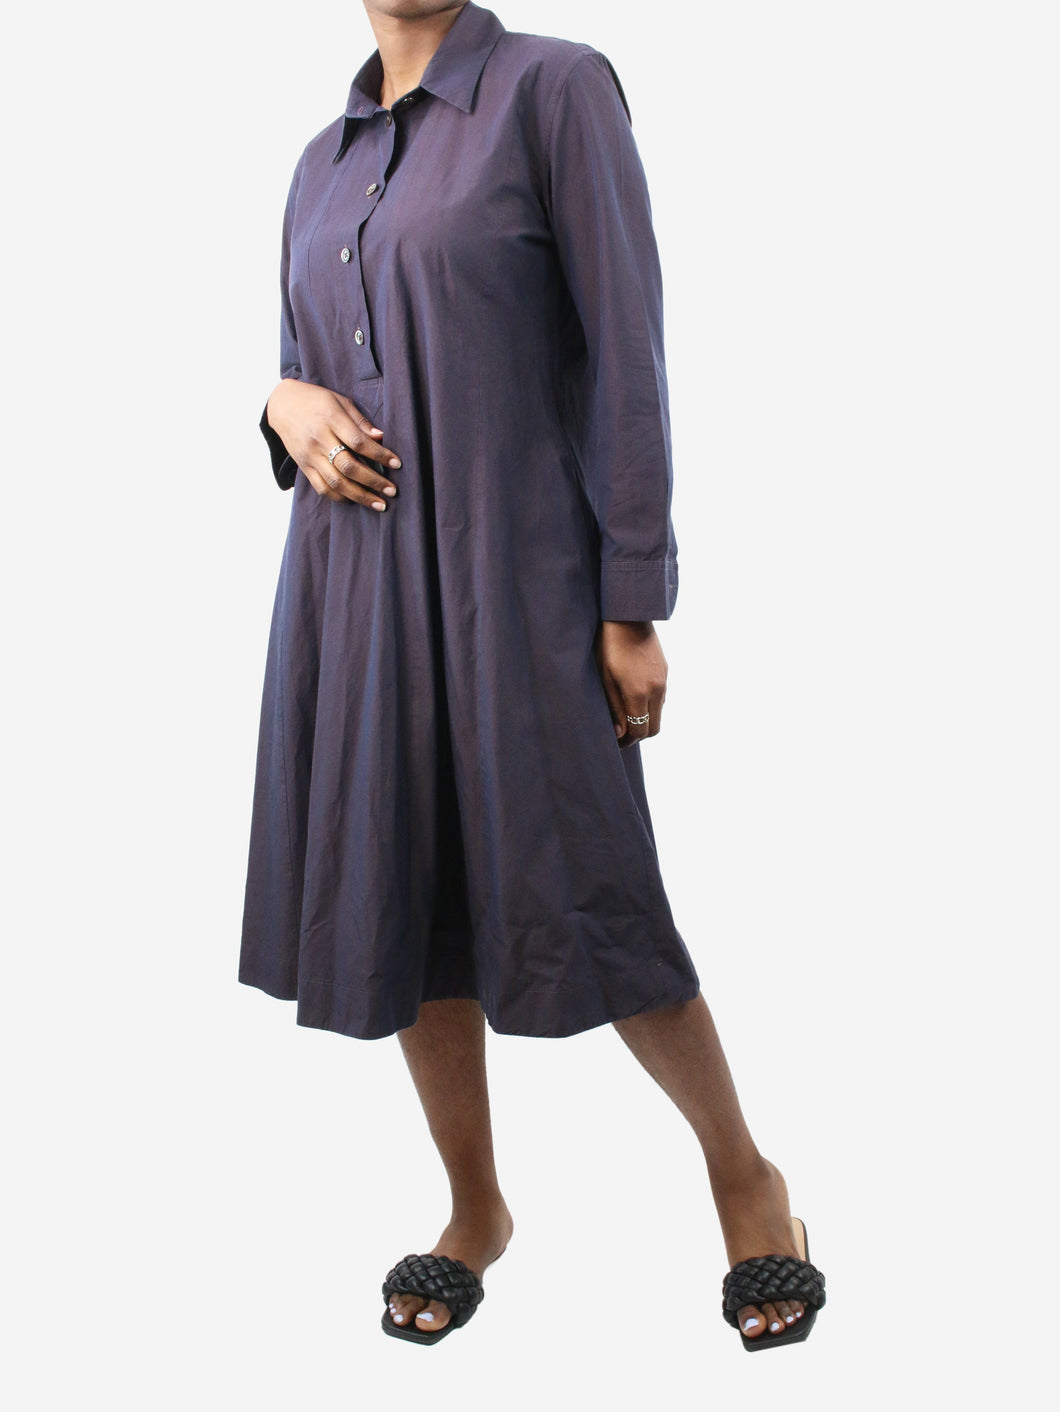 Purple midi long sleeved dress - size UK 12 Dresses Margaret Howell 